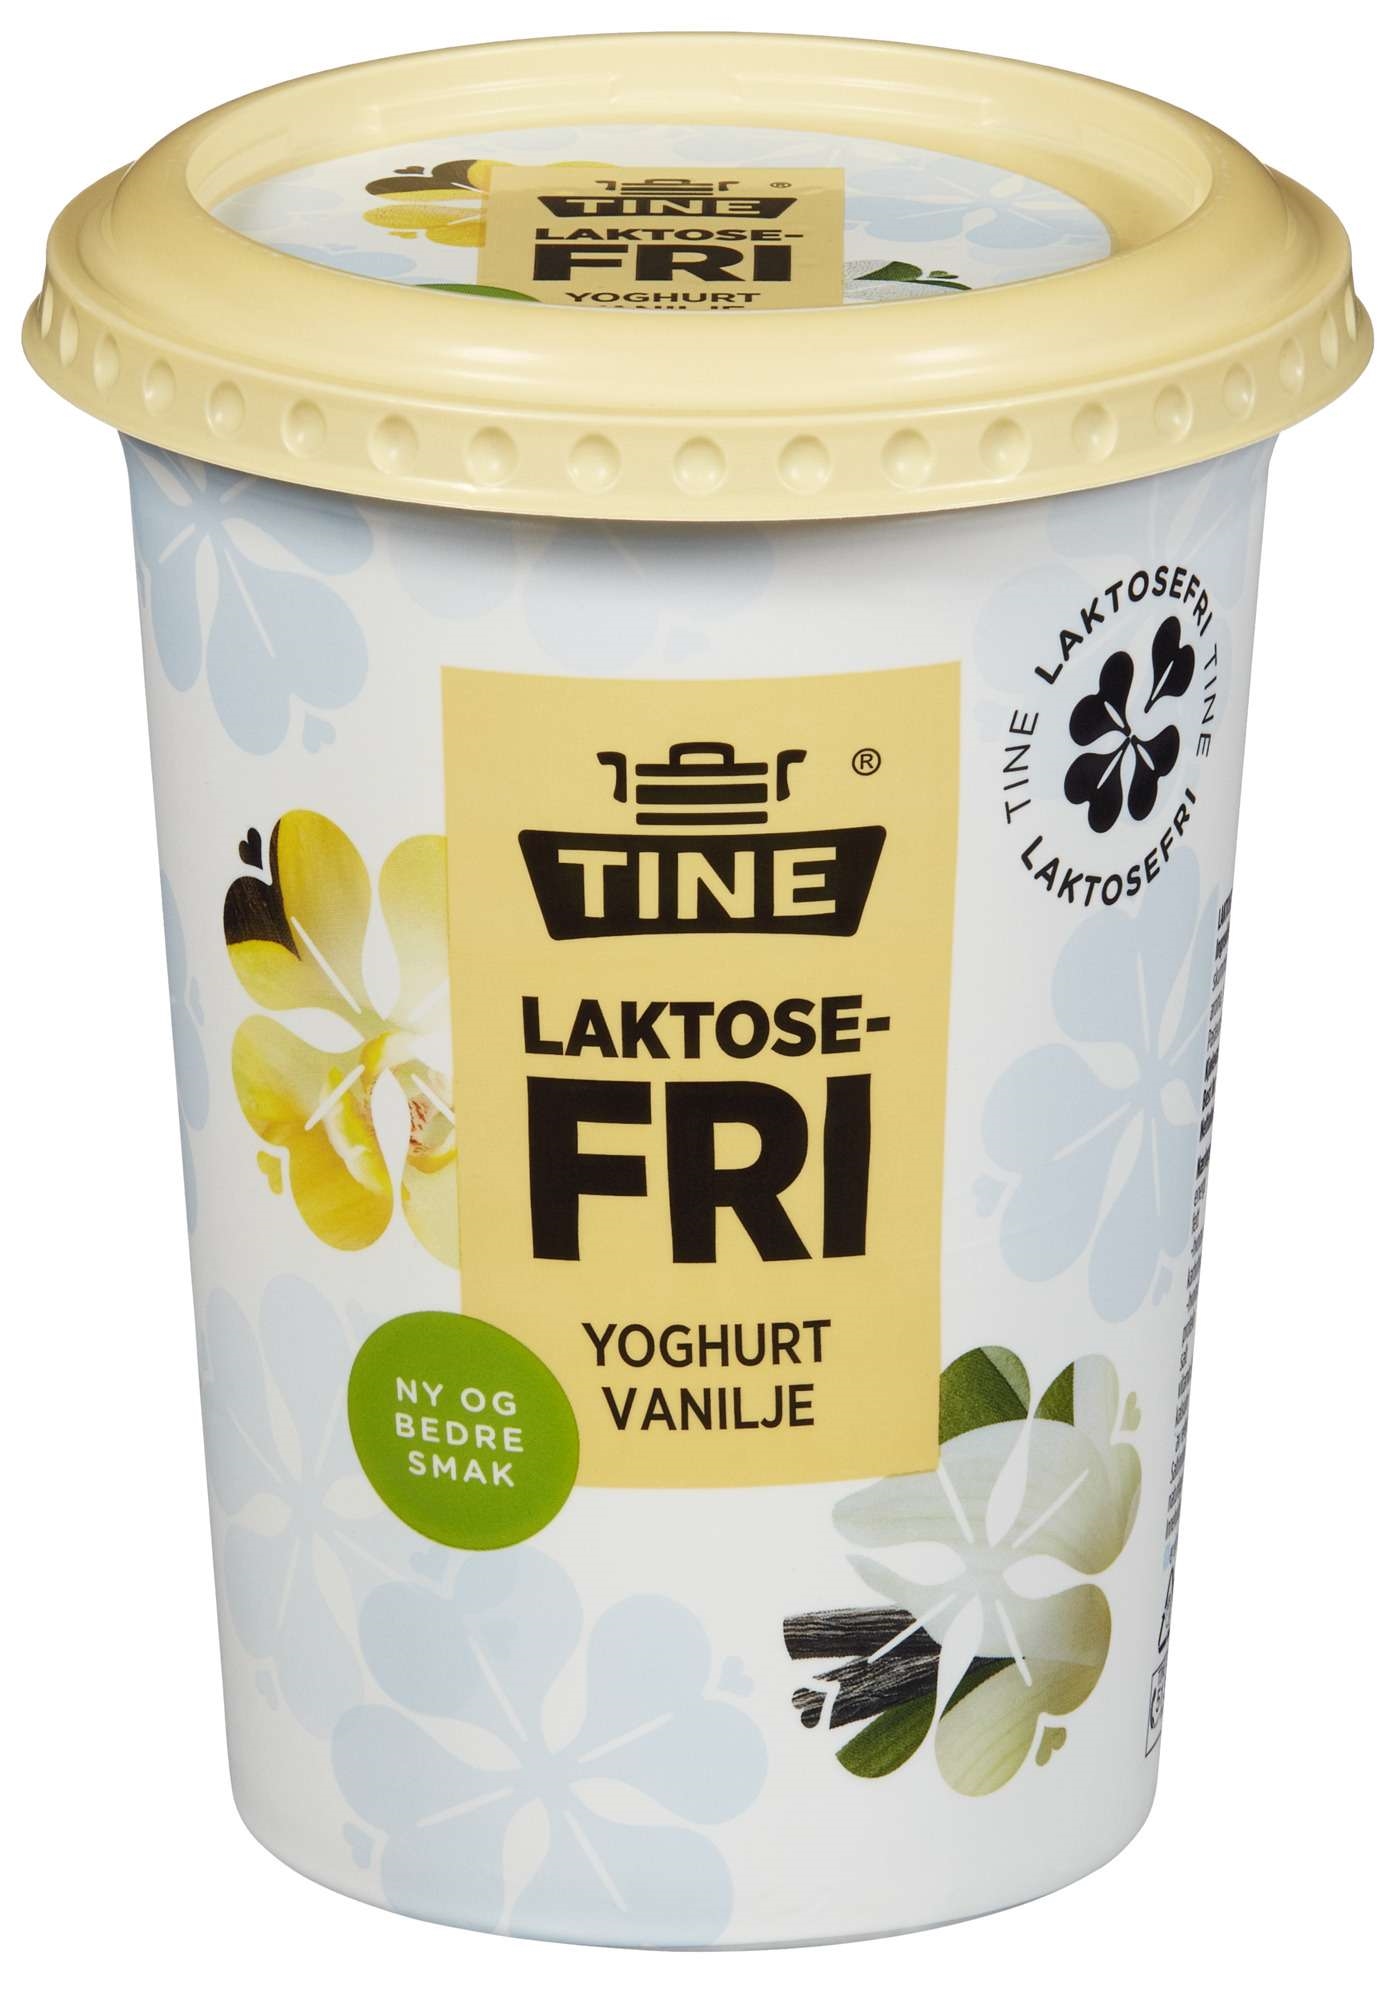 Yoghurt vanilje laktosefri  500g